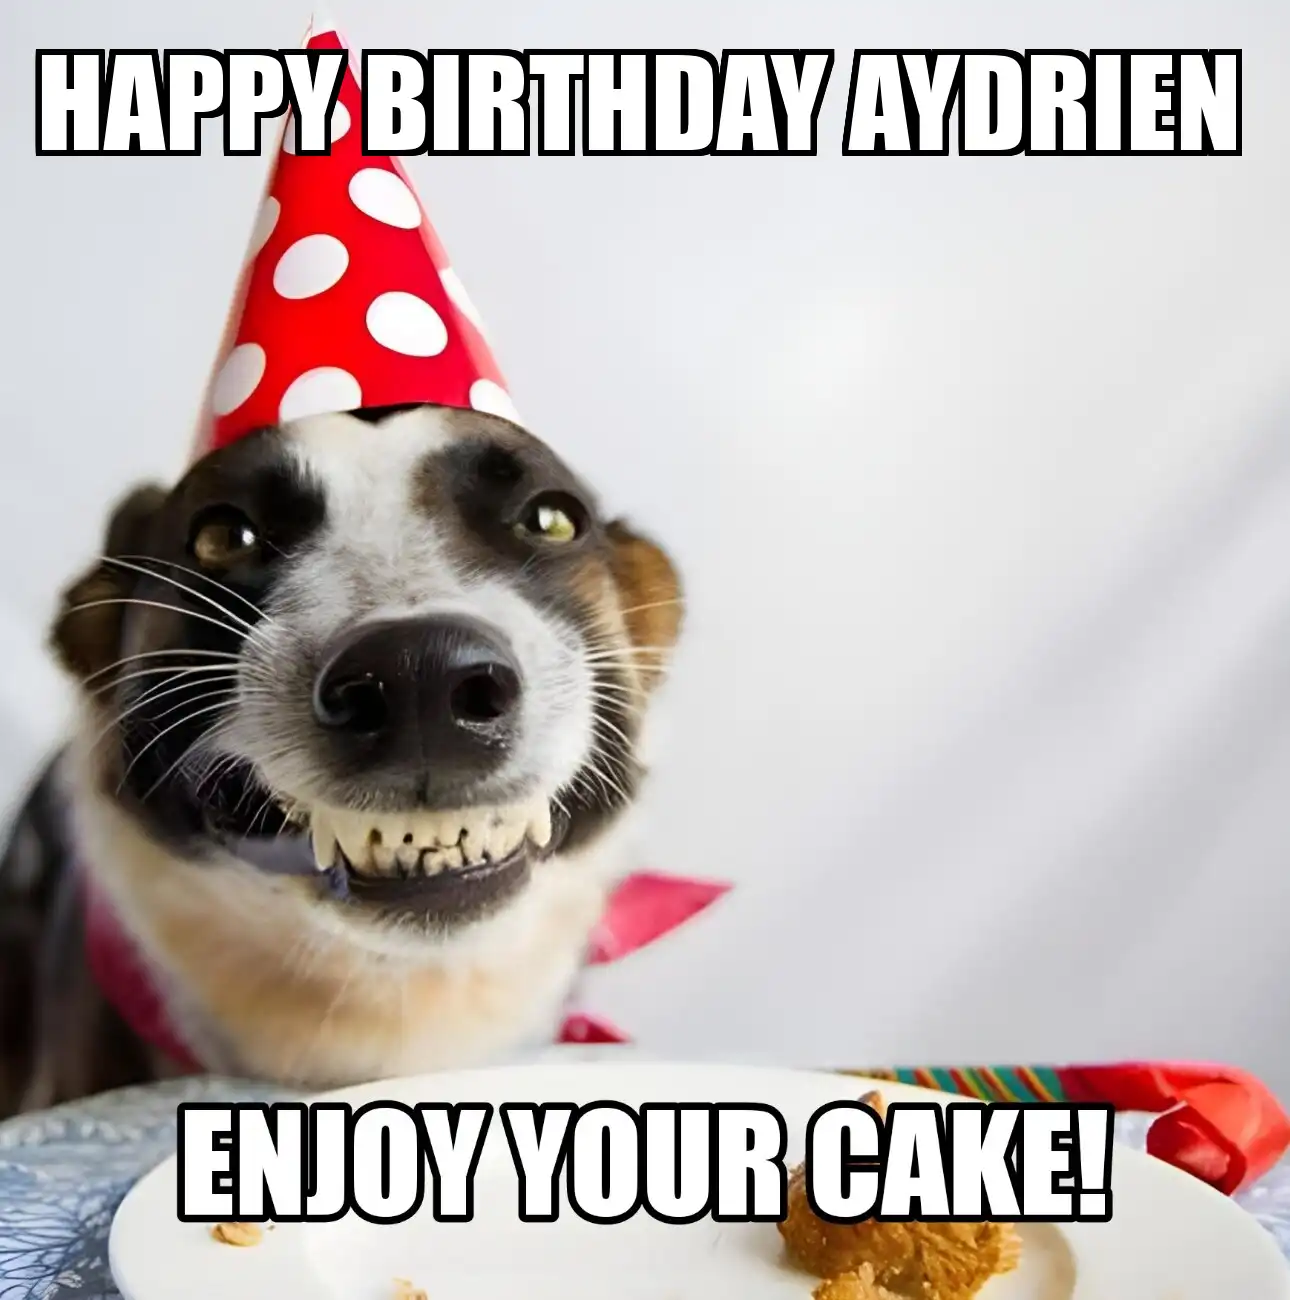 Happy Birthday Aydrien Enjoy Your Cake Dog Meme